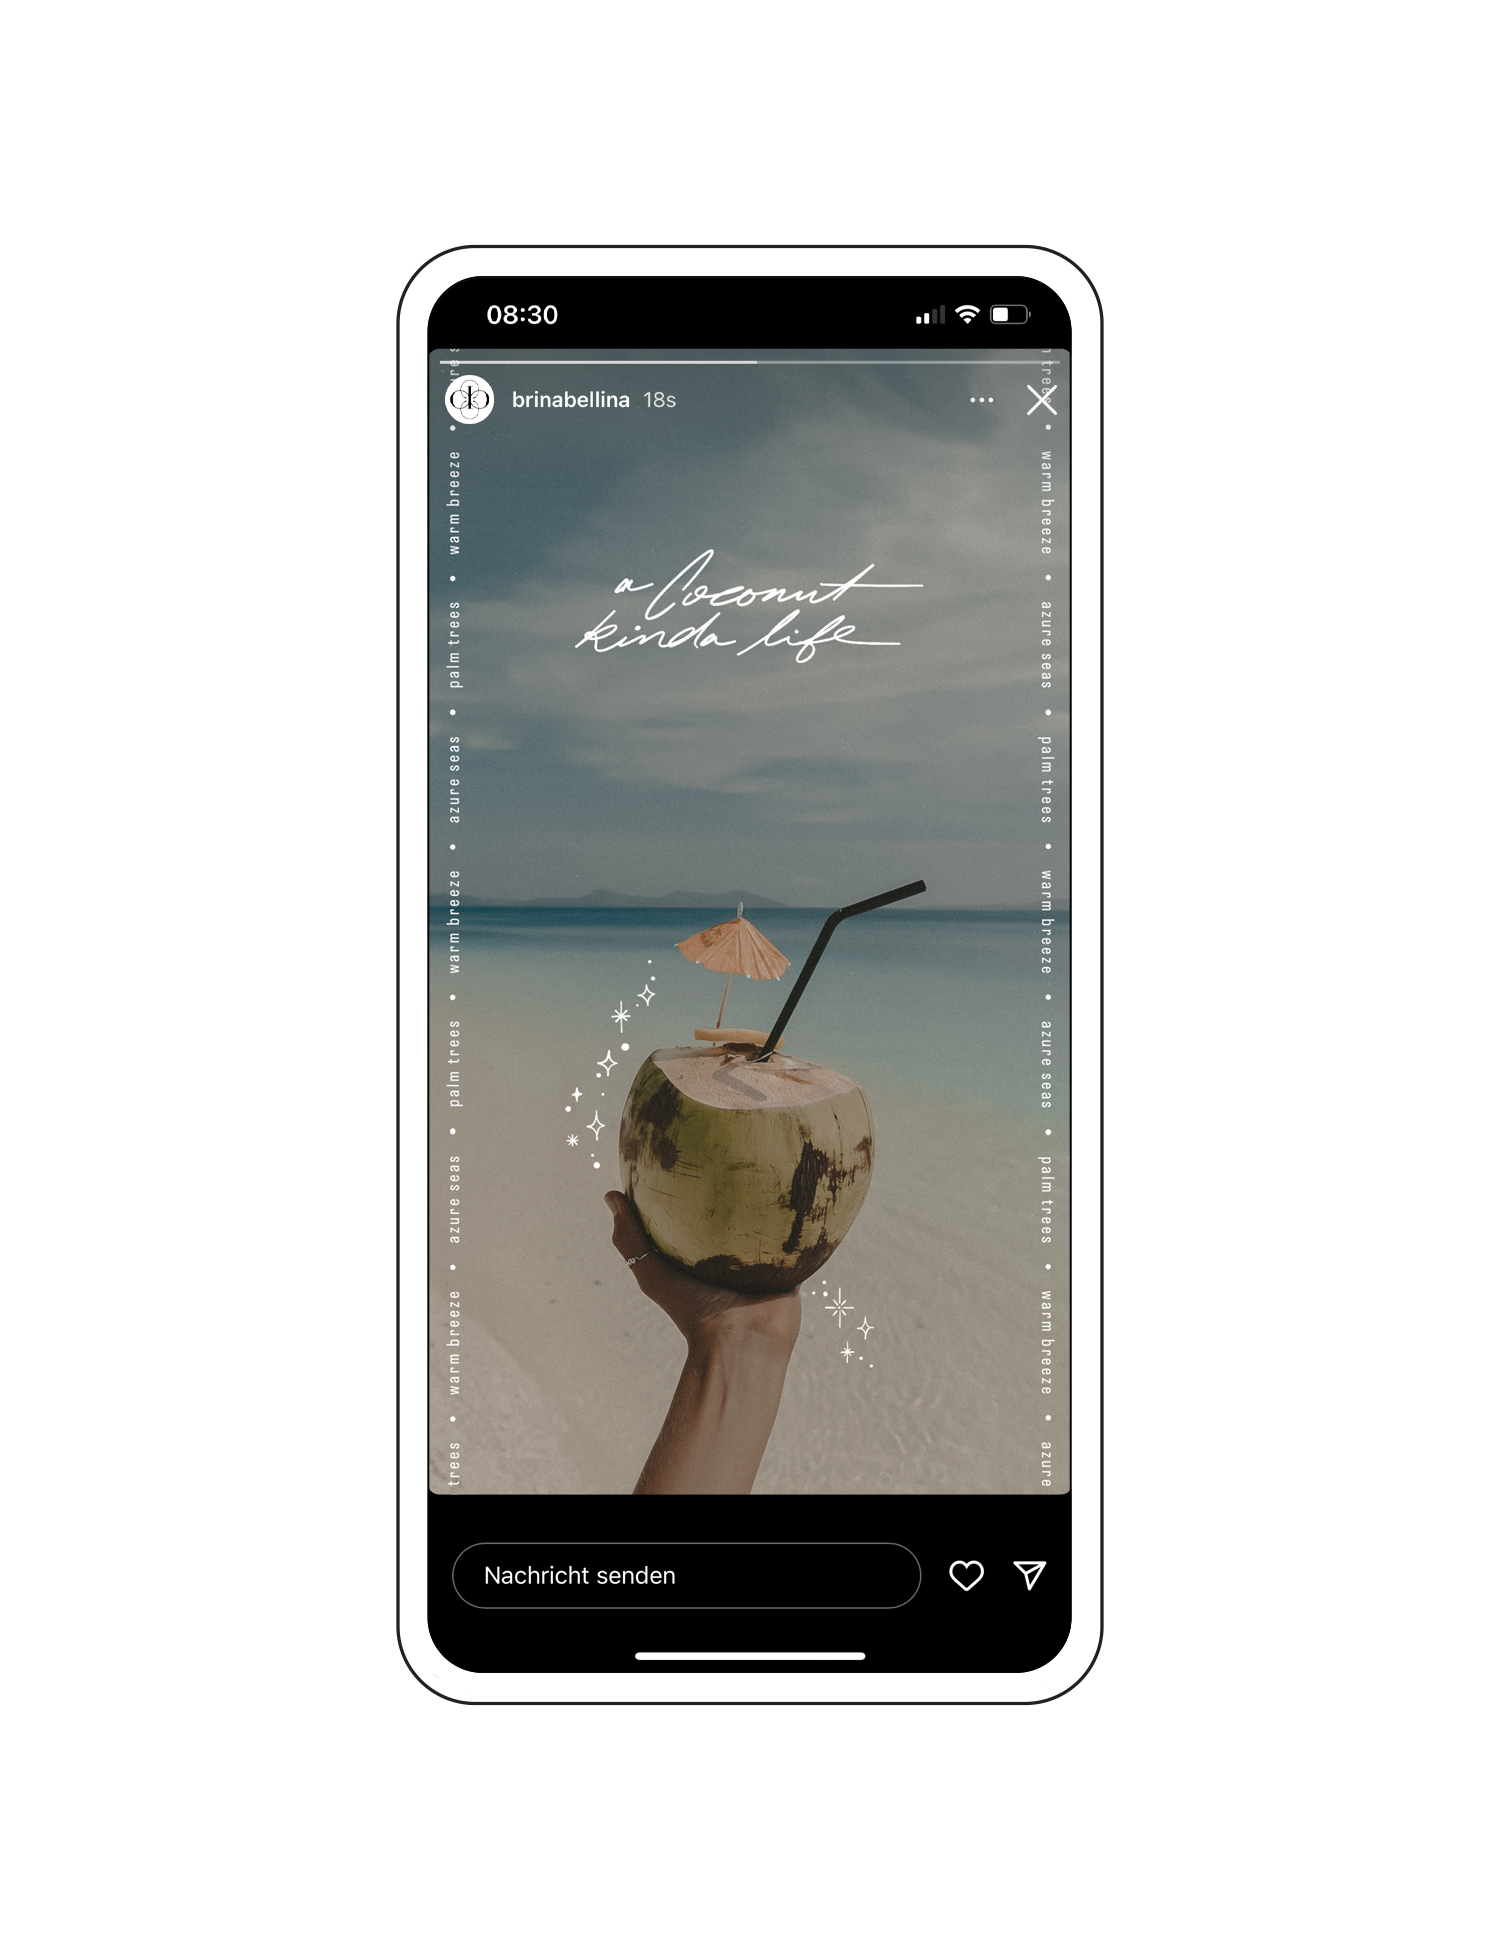 Verspieltes Instagram Story Design mit Glitzer-Stickern un dem 'a coconut kinda life' Schriftzug aus der 'Summer Magic' Instagram Story Sticker Kollektion.